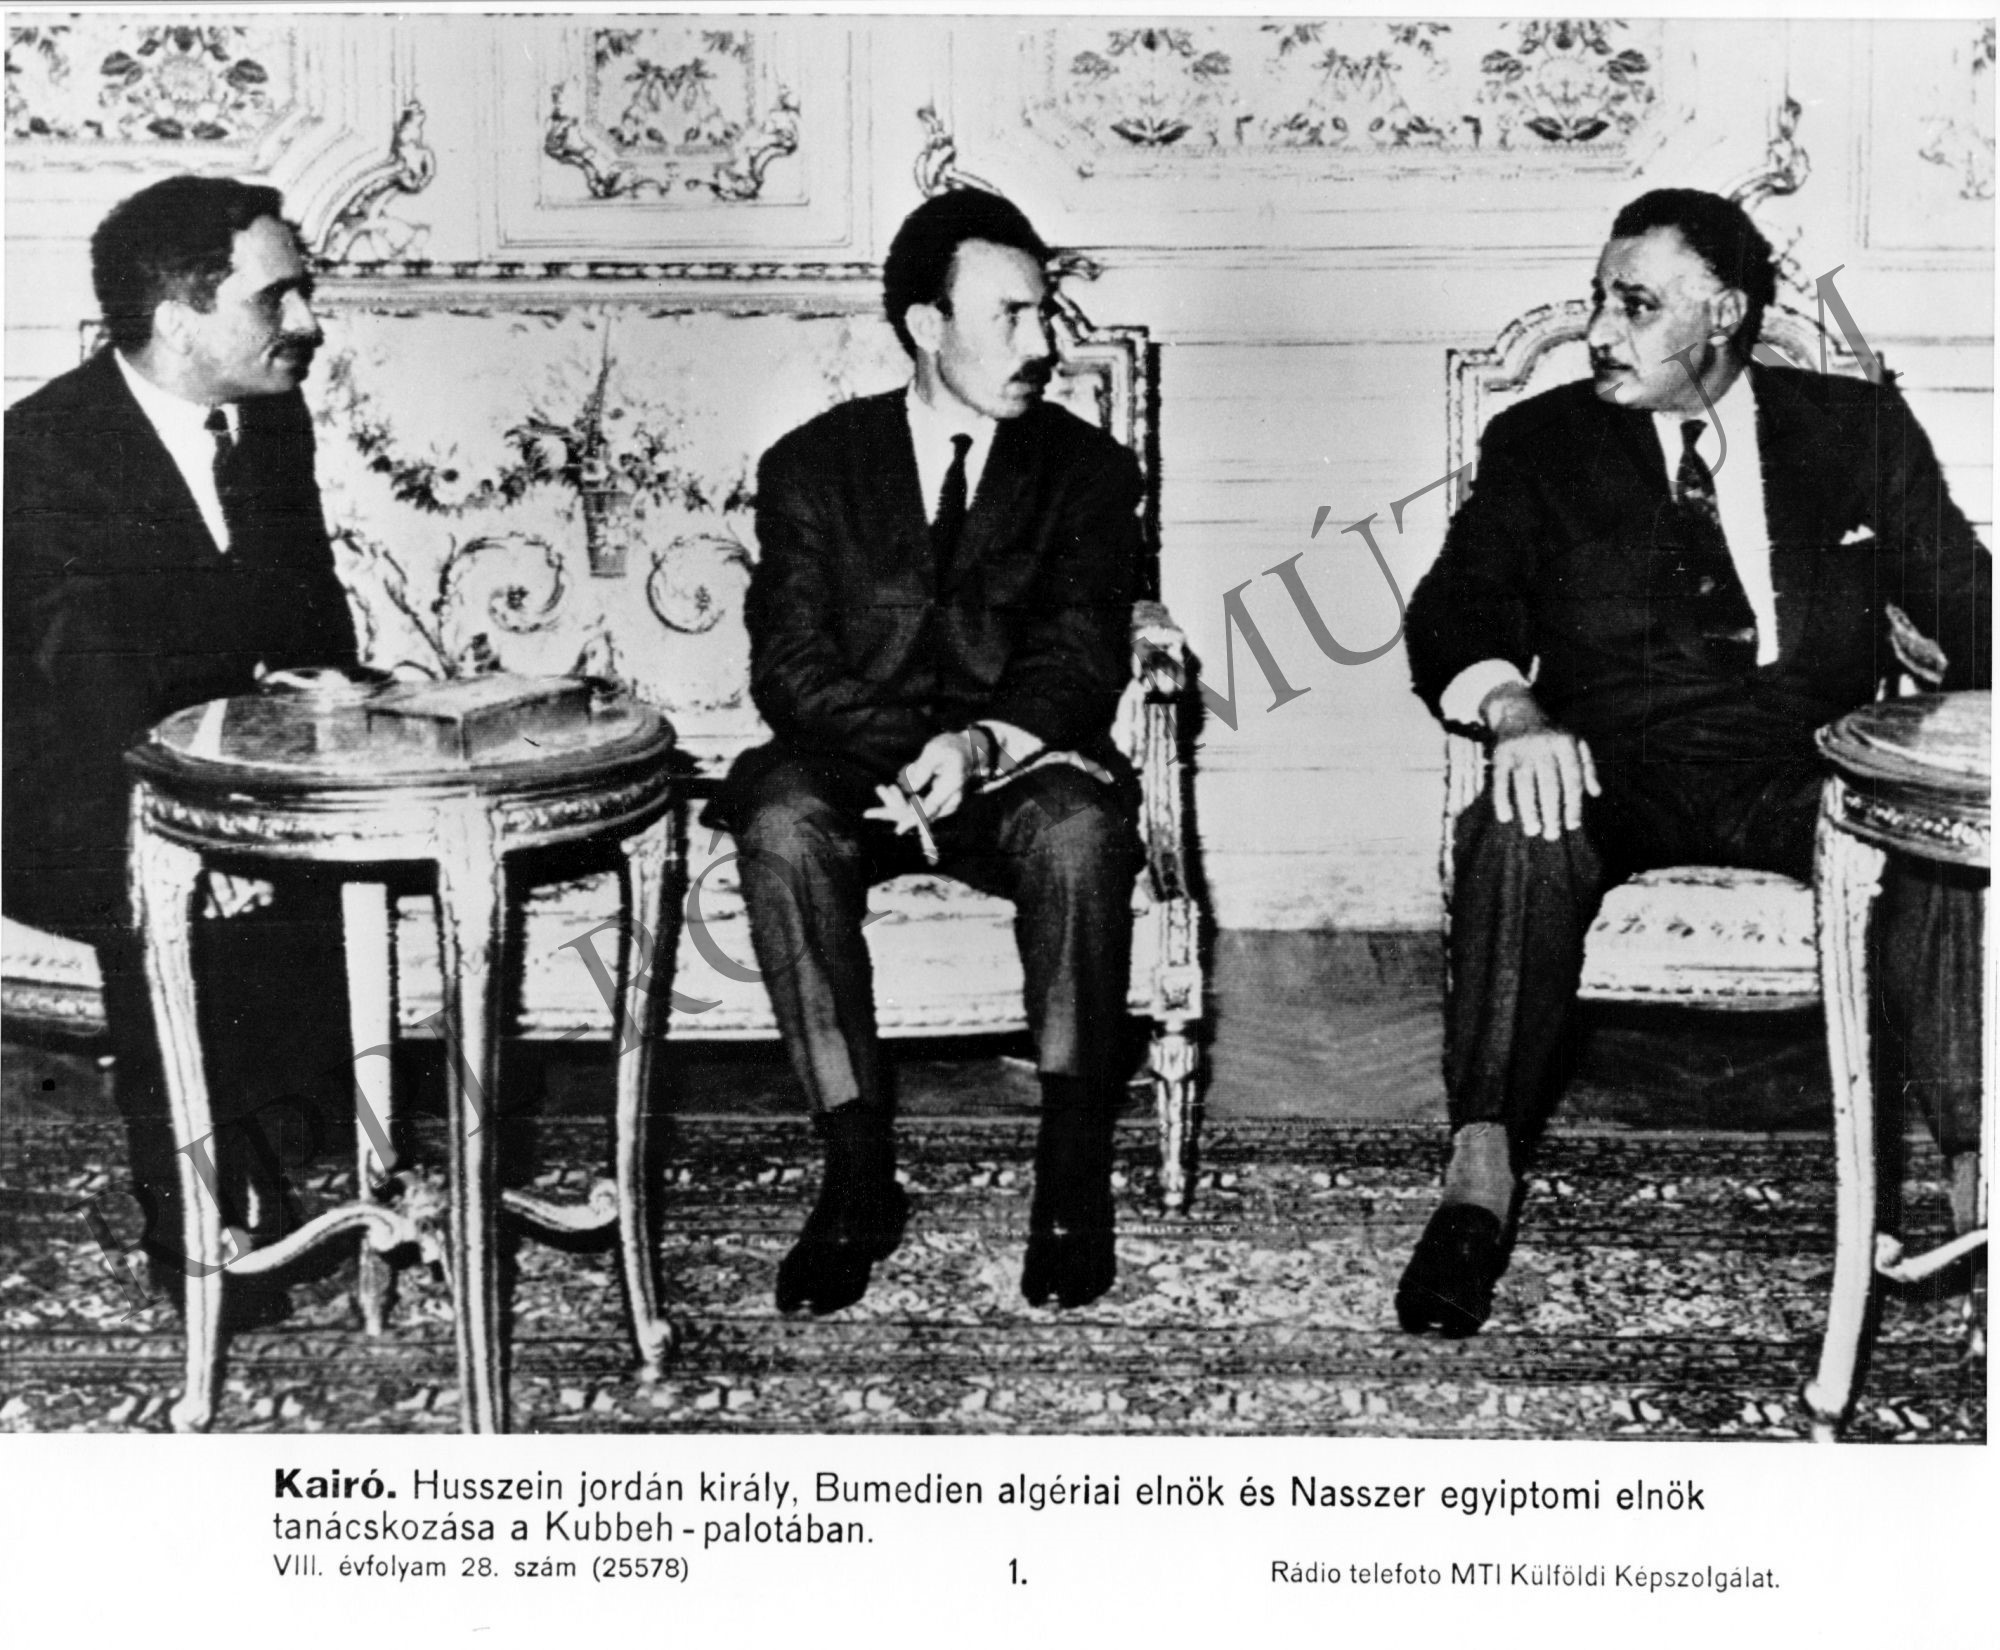 Husszein Jordán király, Bumedien algériai elnök és Nasszer egyiptomi elnök tanácskozása a Kubbeh-palotában. (Rippl-Rónai Múzeum CC BY-NC-SA)